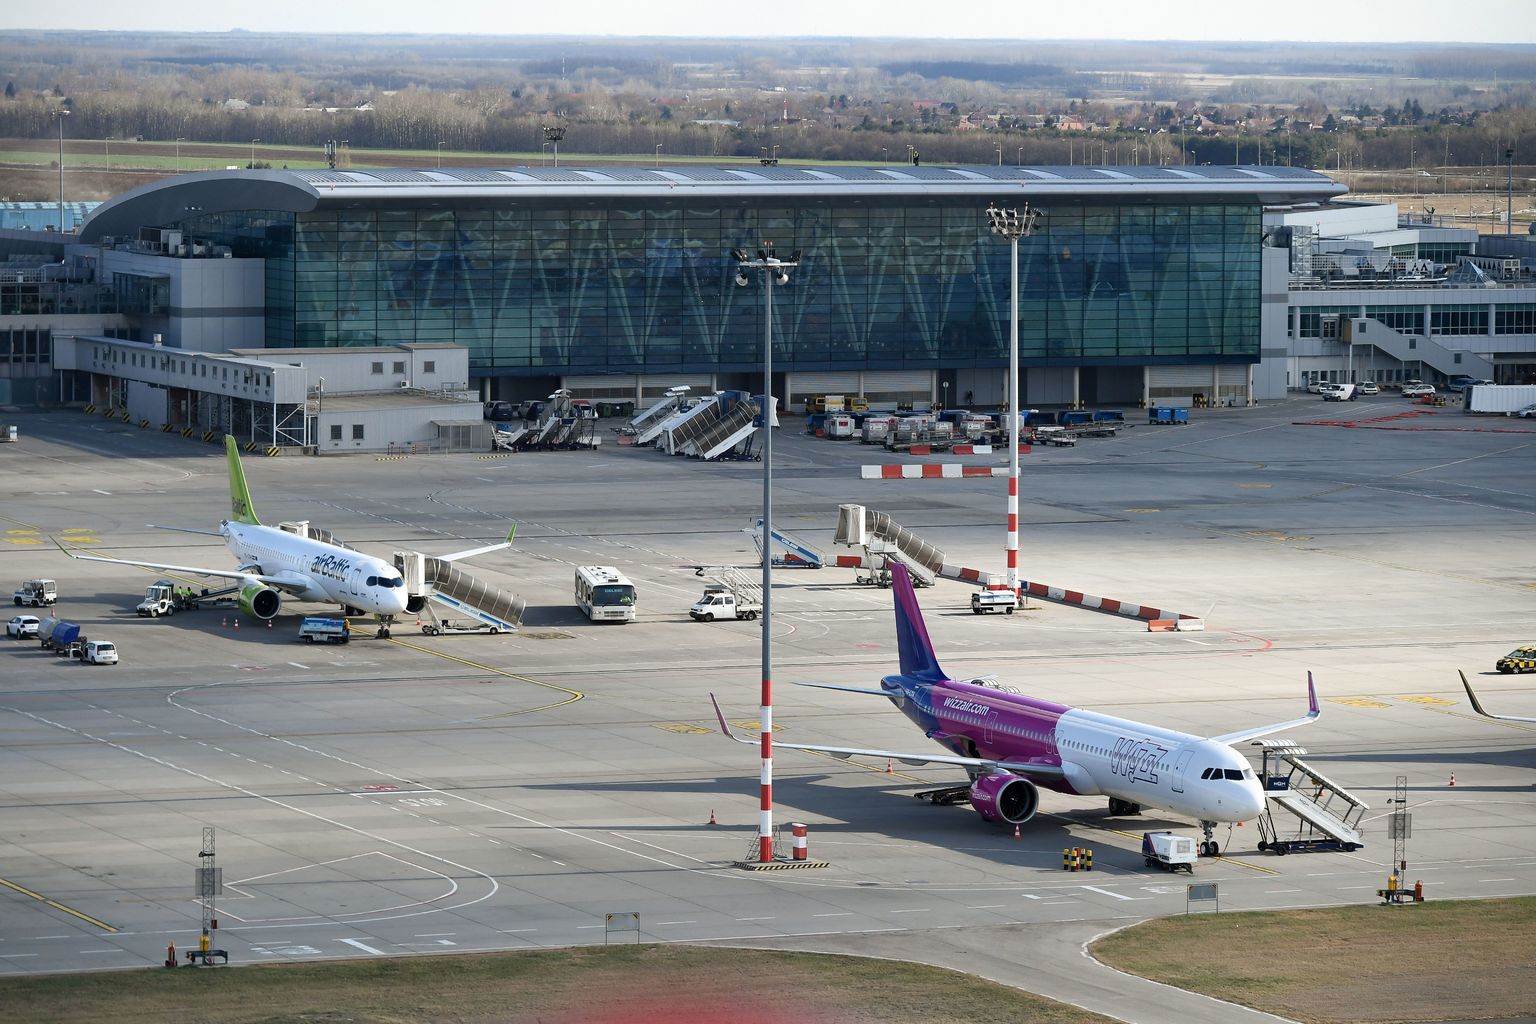 Elkezdi a ferihegyi repülőtér 2-es futópályájának felújítását a Budapest Airport